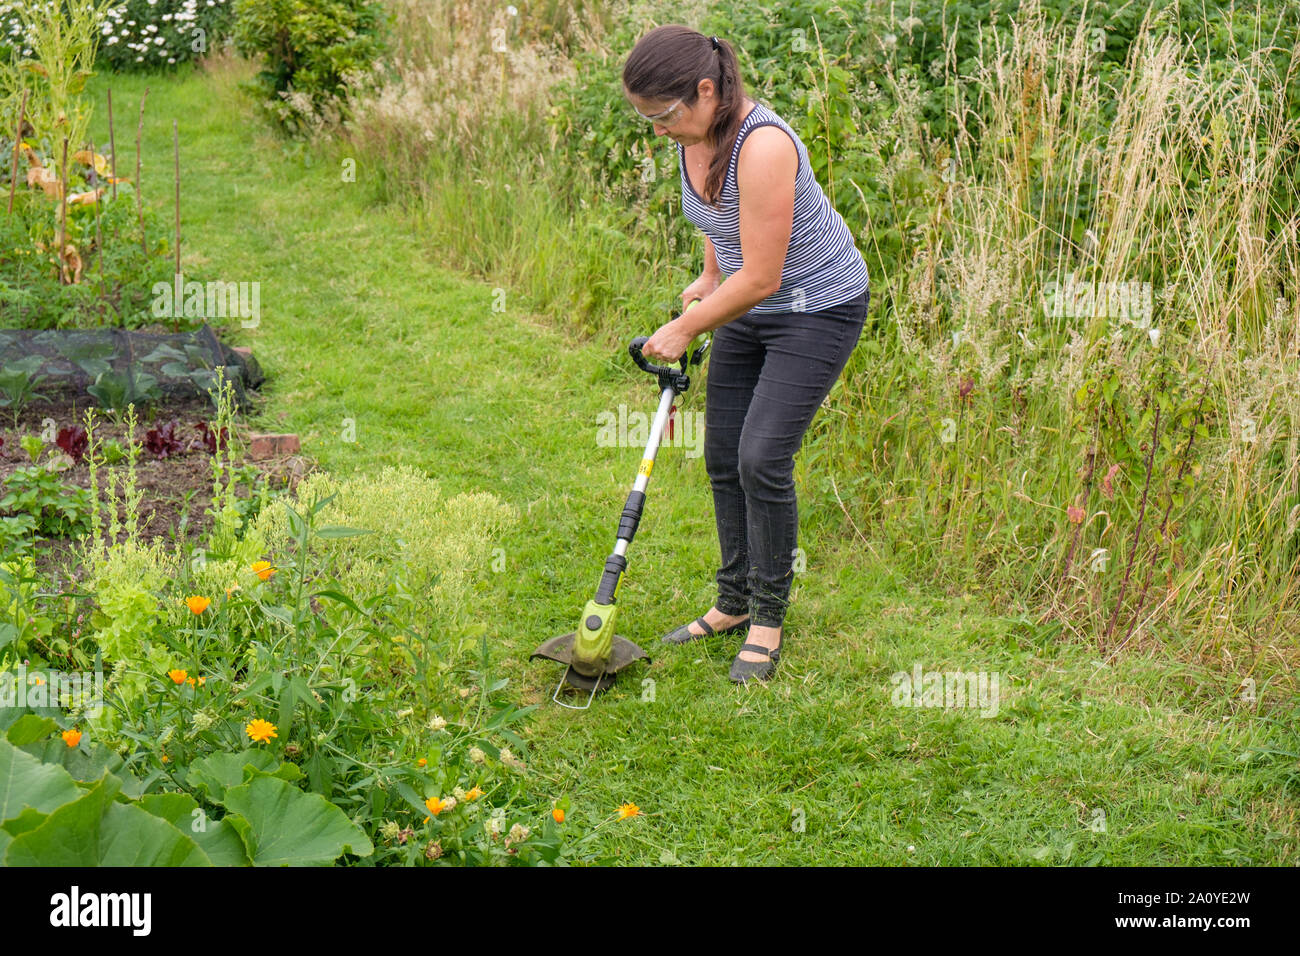 Frau mit schnurlosen (Lithium-Ionen-Akku) strimmer Gras auf dem Weg in die Zuteilung zu schneiden Stockfoto